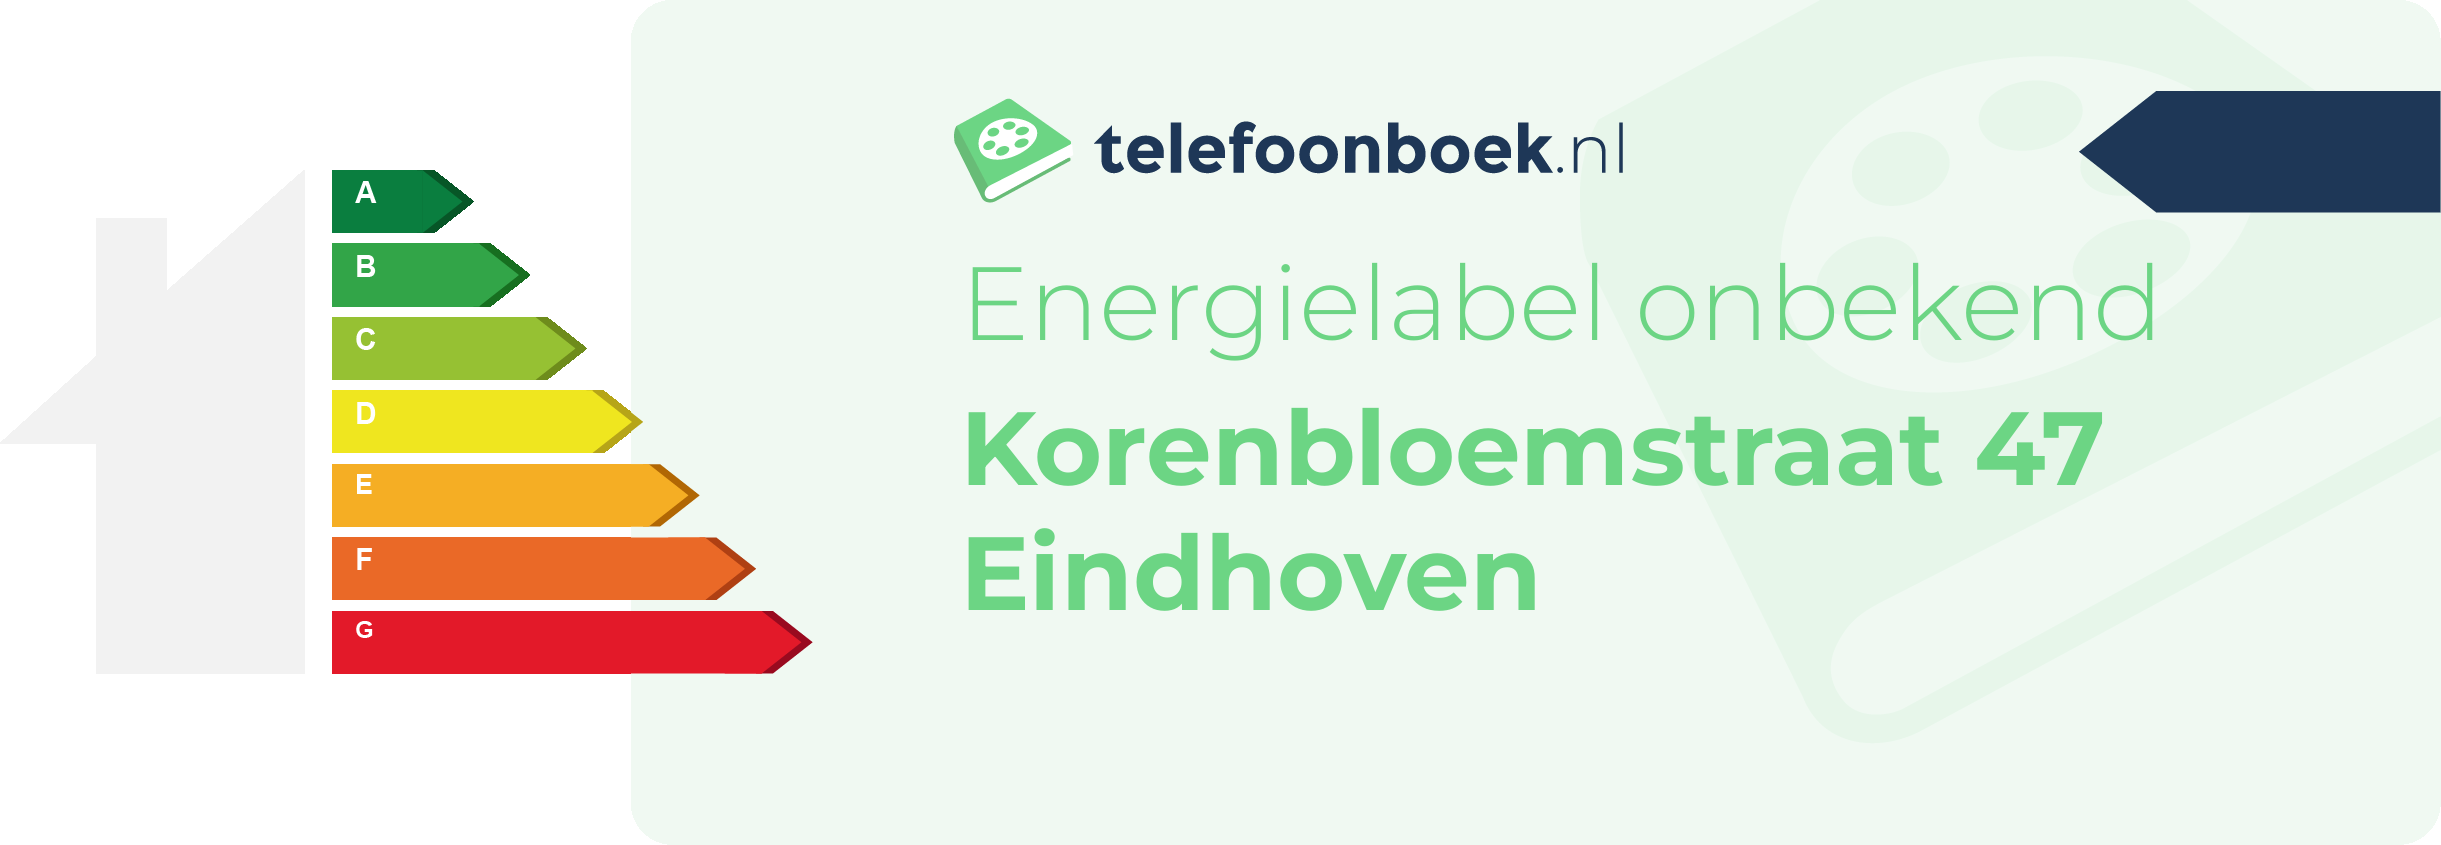 Energielabel Korenbloemstraat 47 Eindhoven